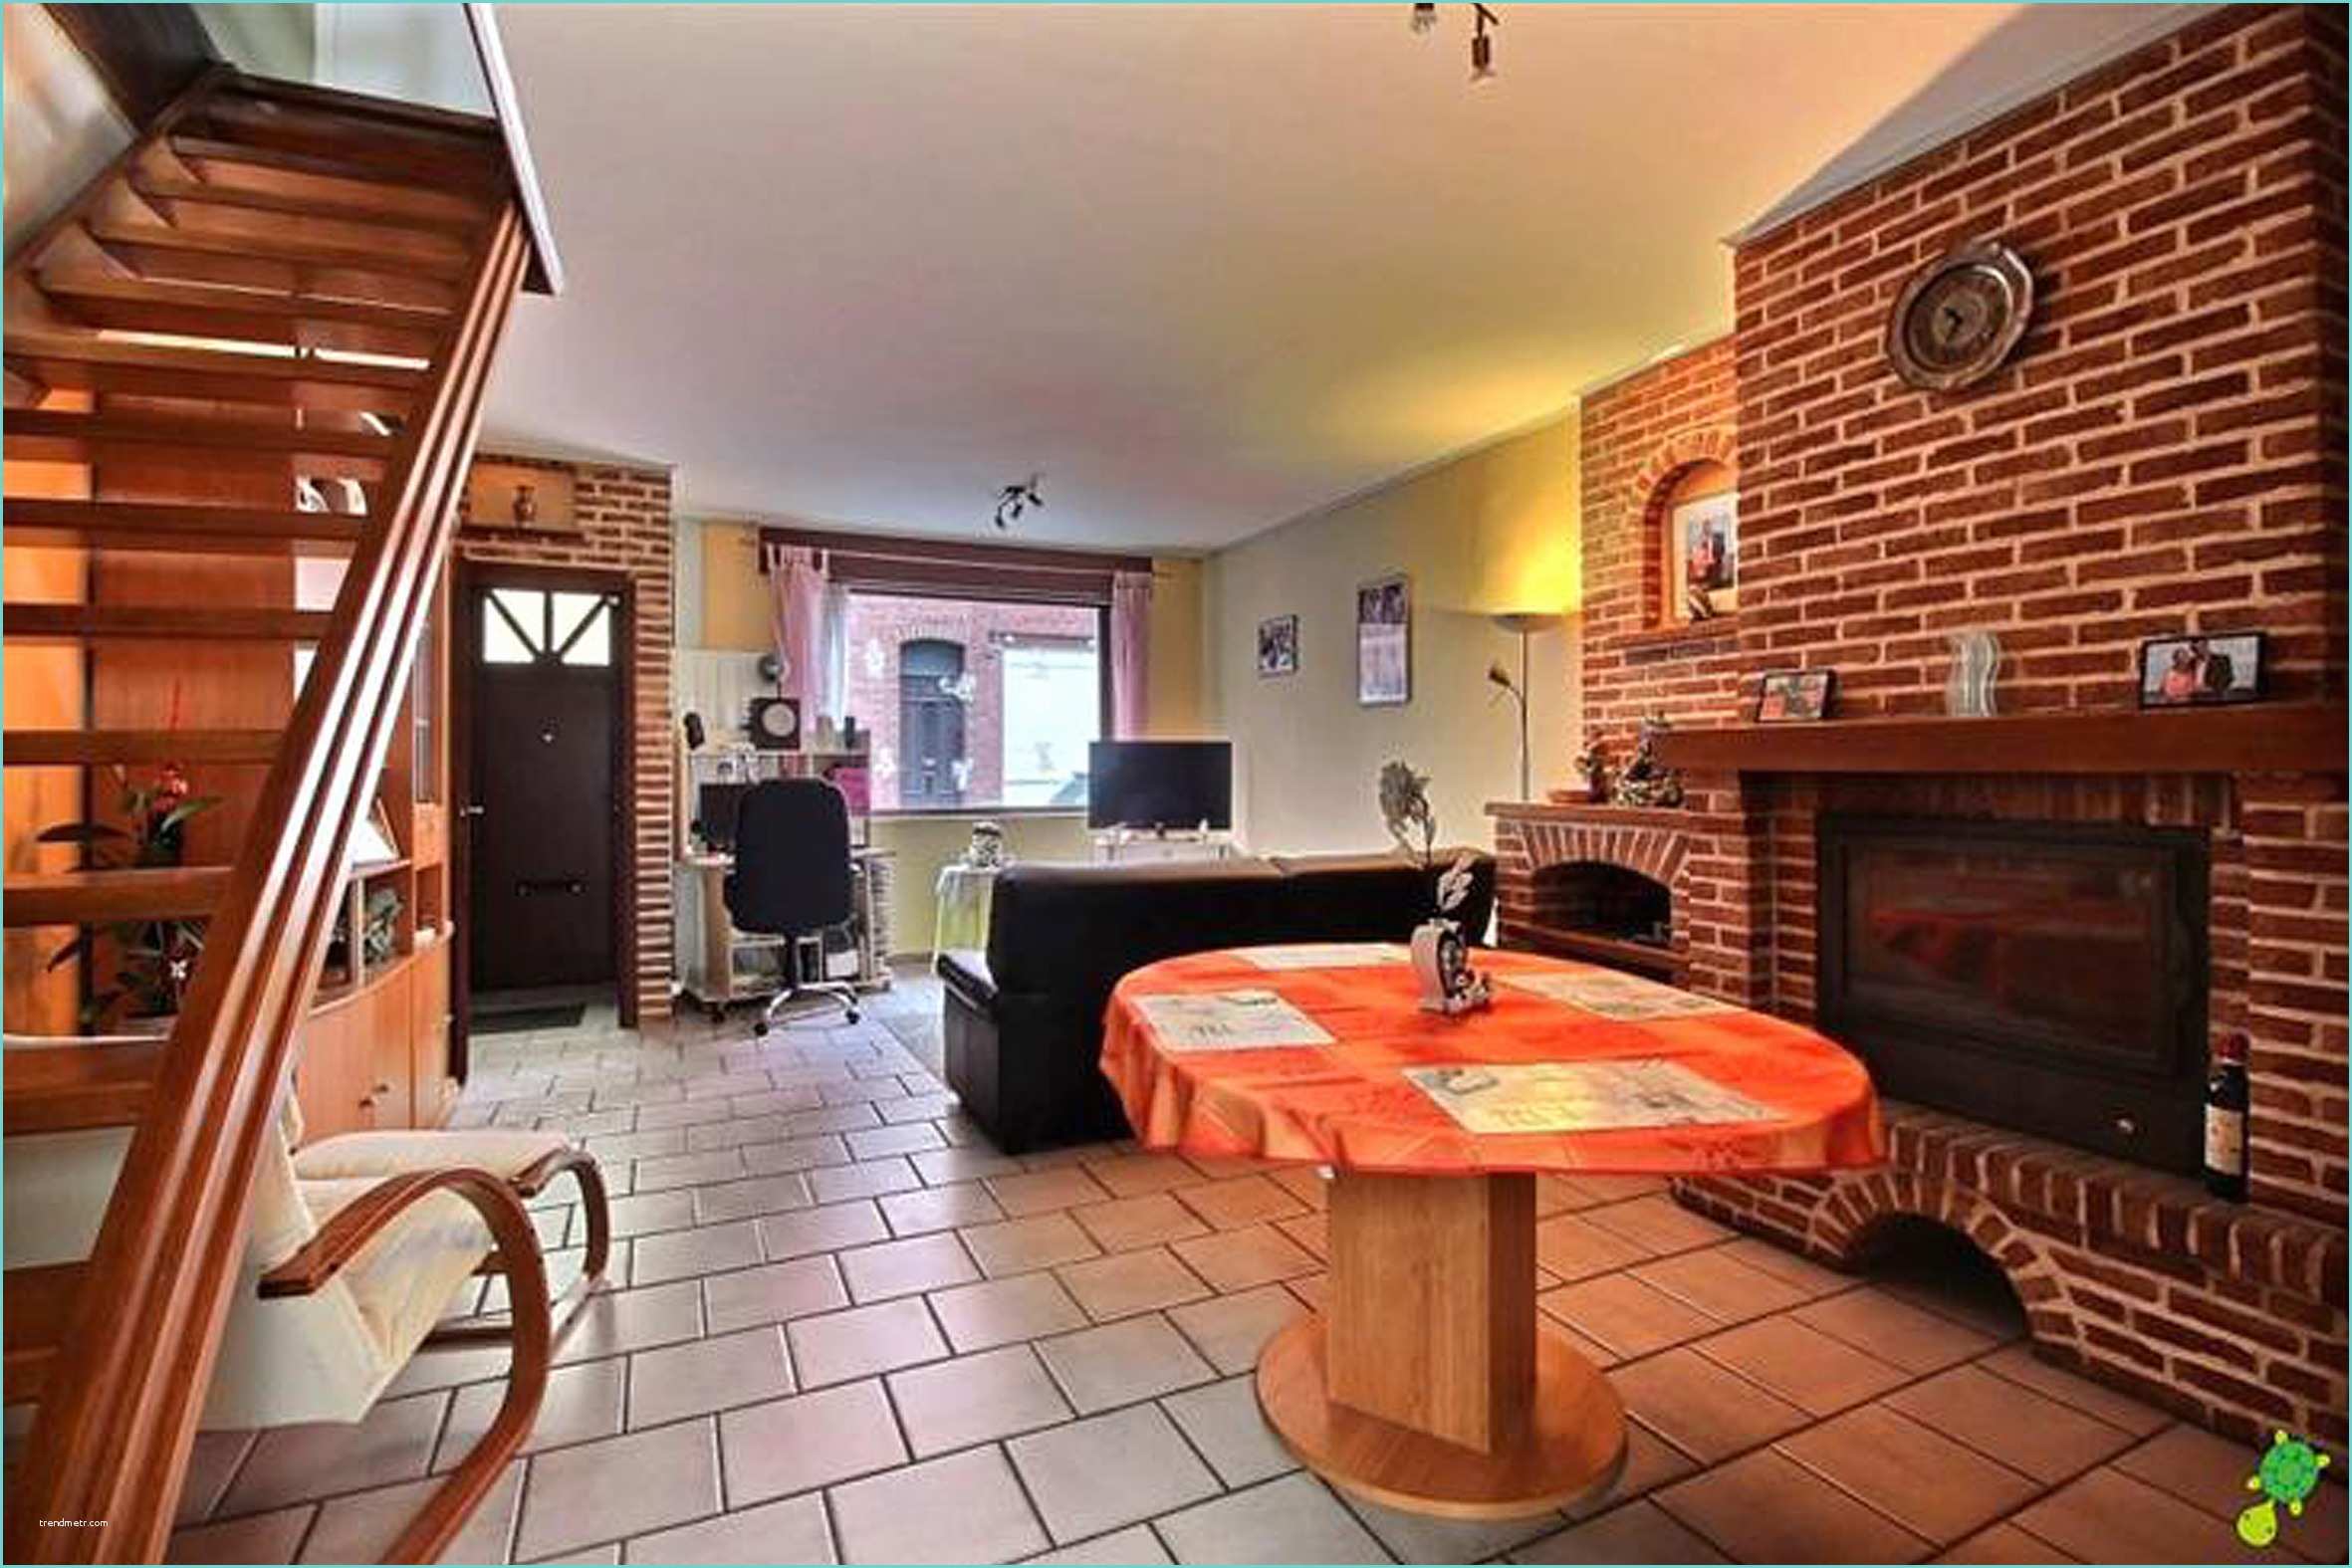 Location Appartement Strasbourg Neudorf Particulier Maison à Louer 2 Chambres à Mouscron 7700